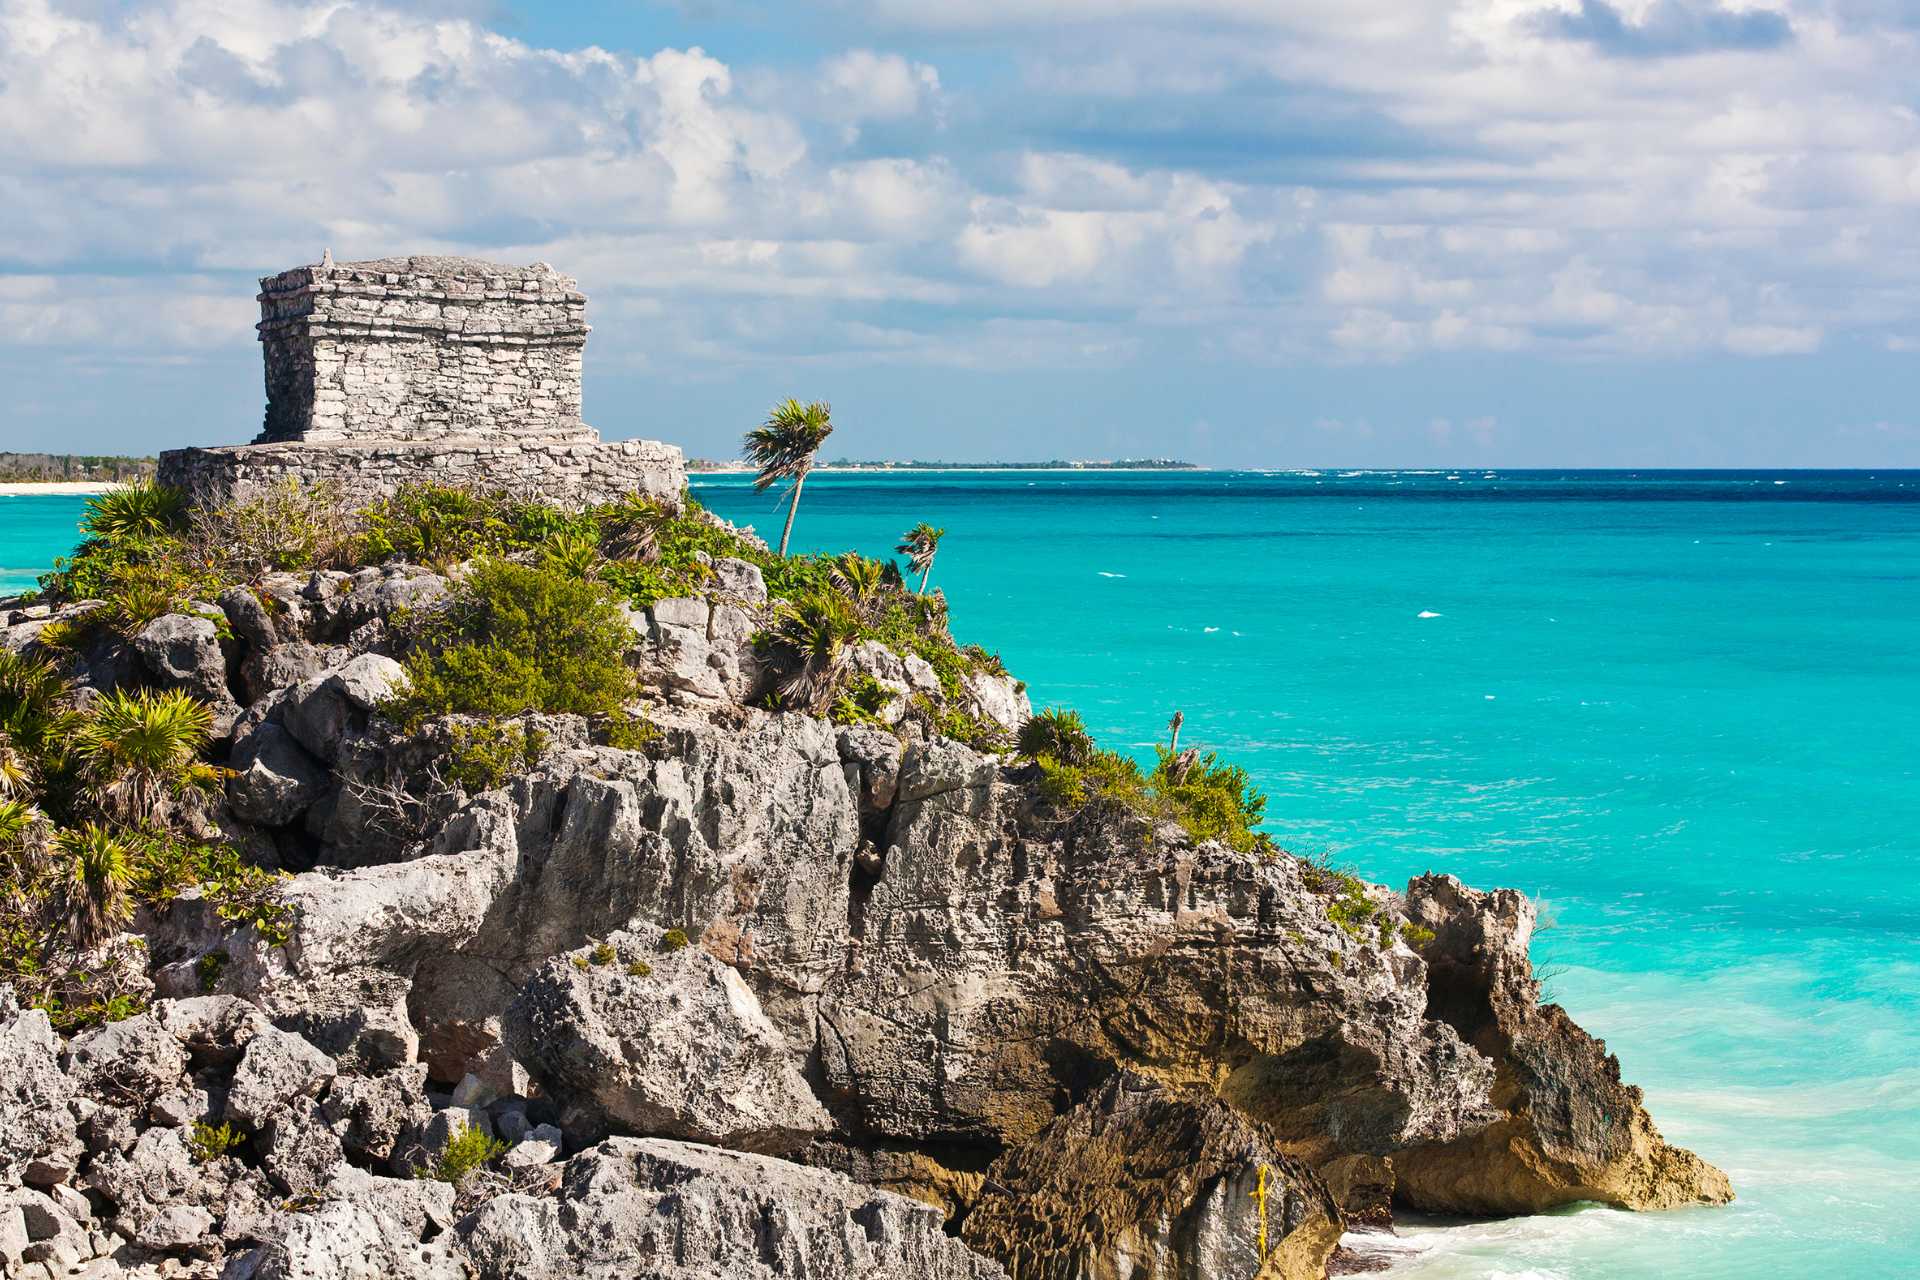 The Mayan Ruins Of Tulum Overlooking The Ocean